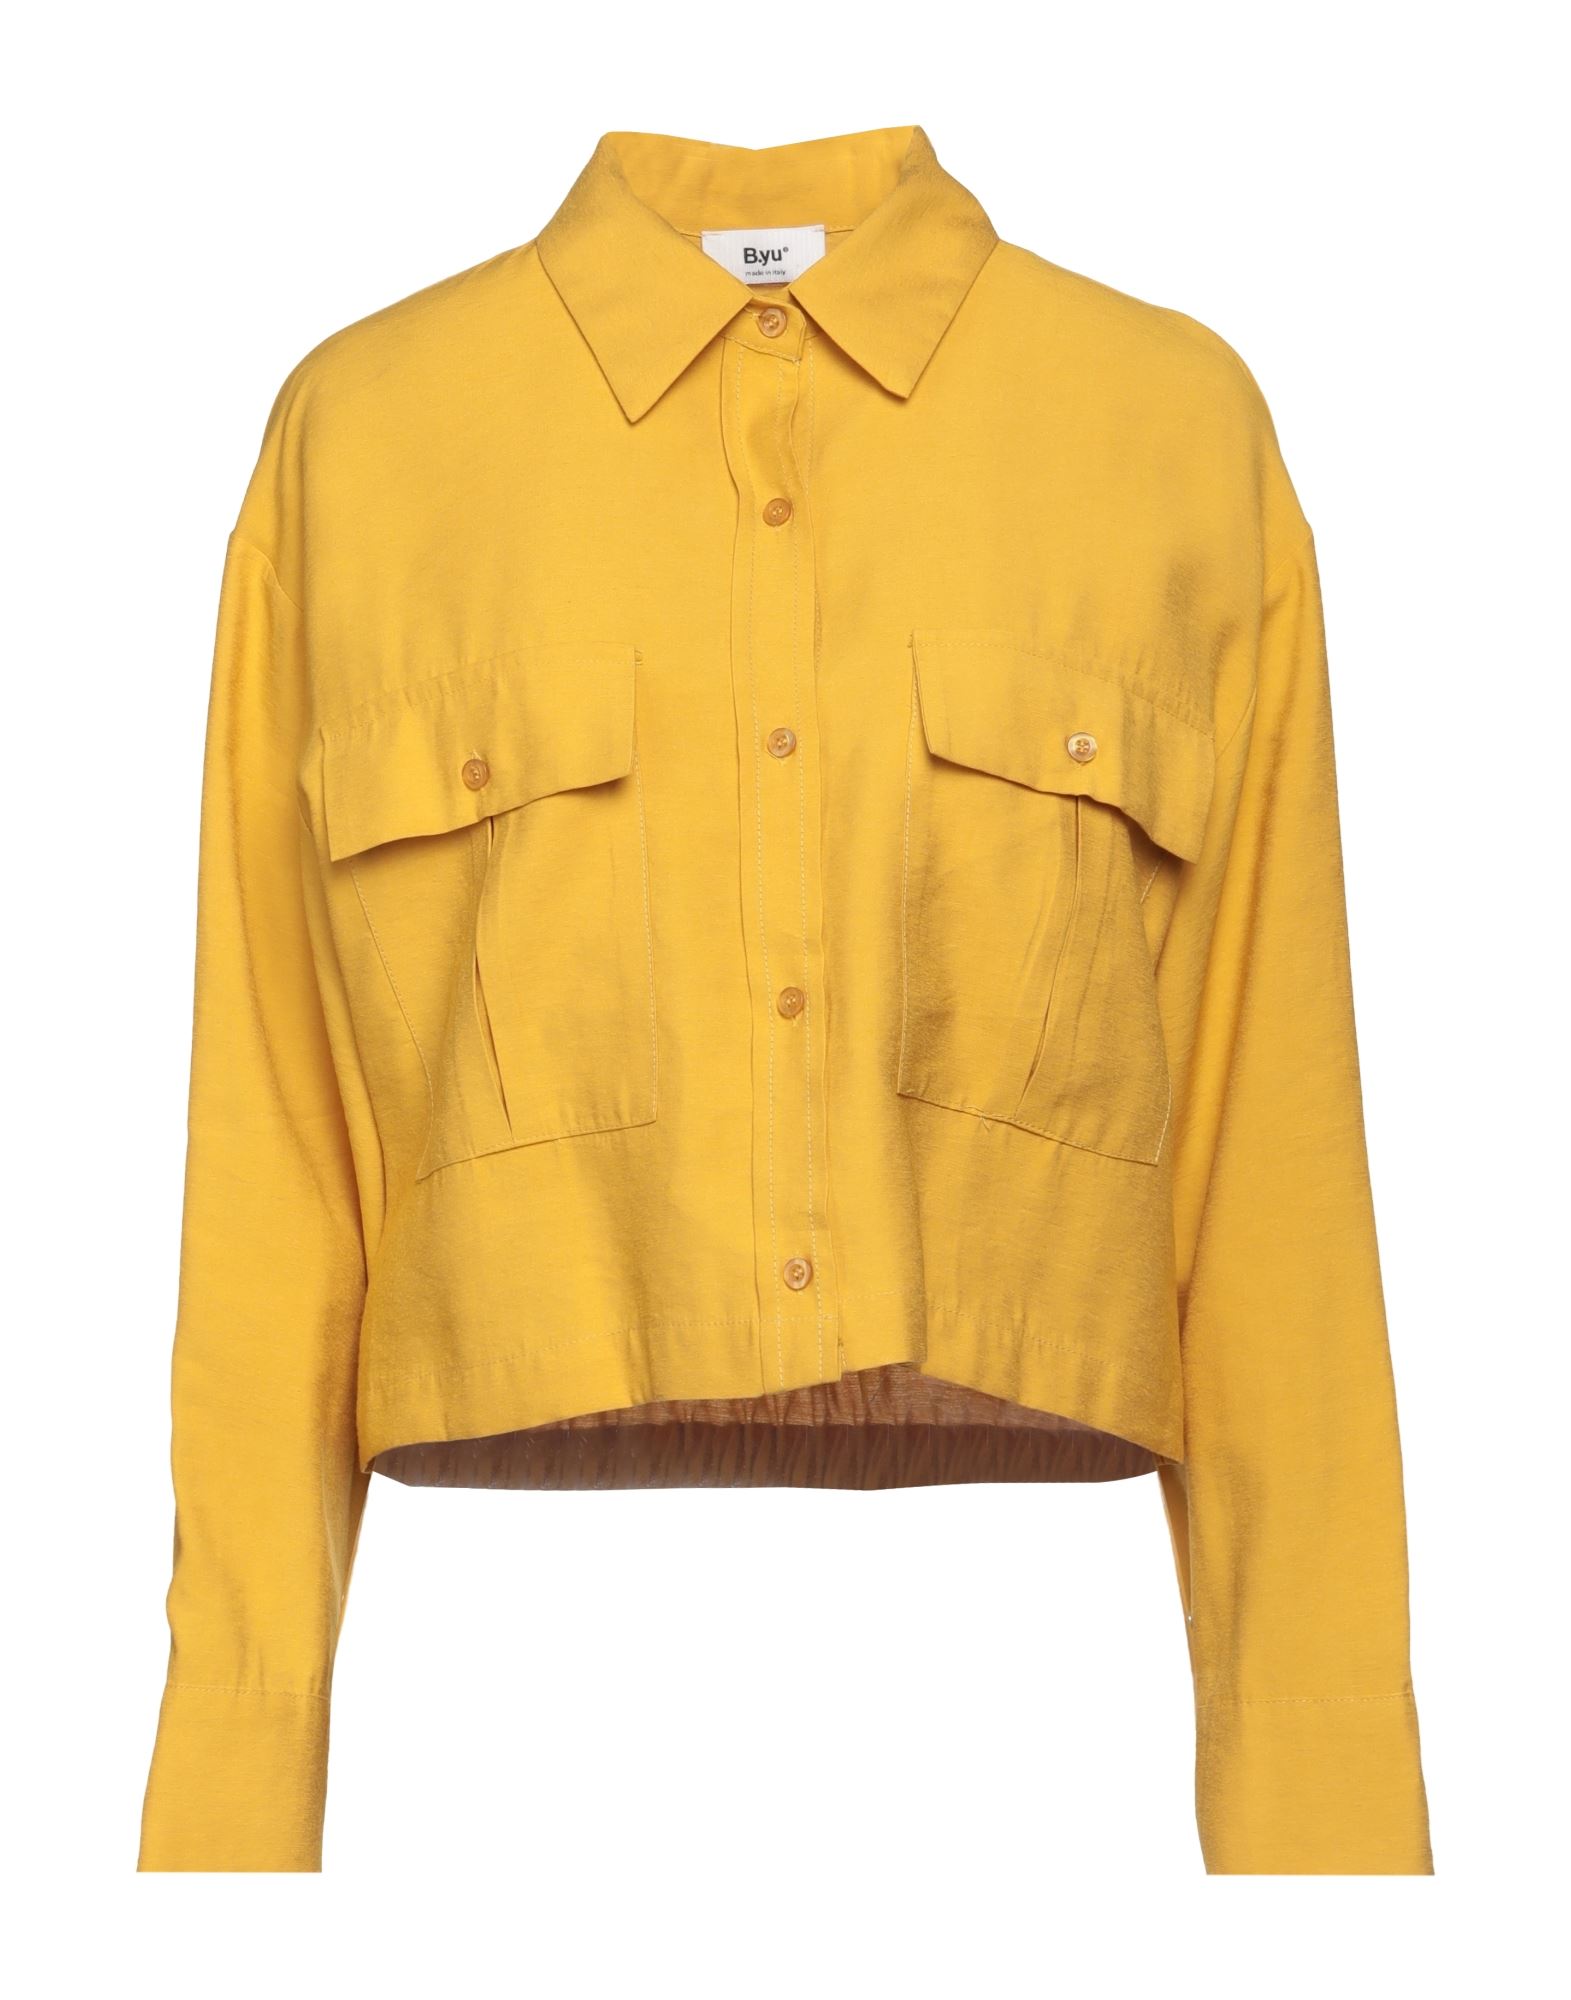 B.yu Shirts In Yellow